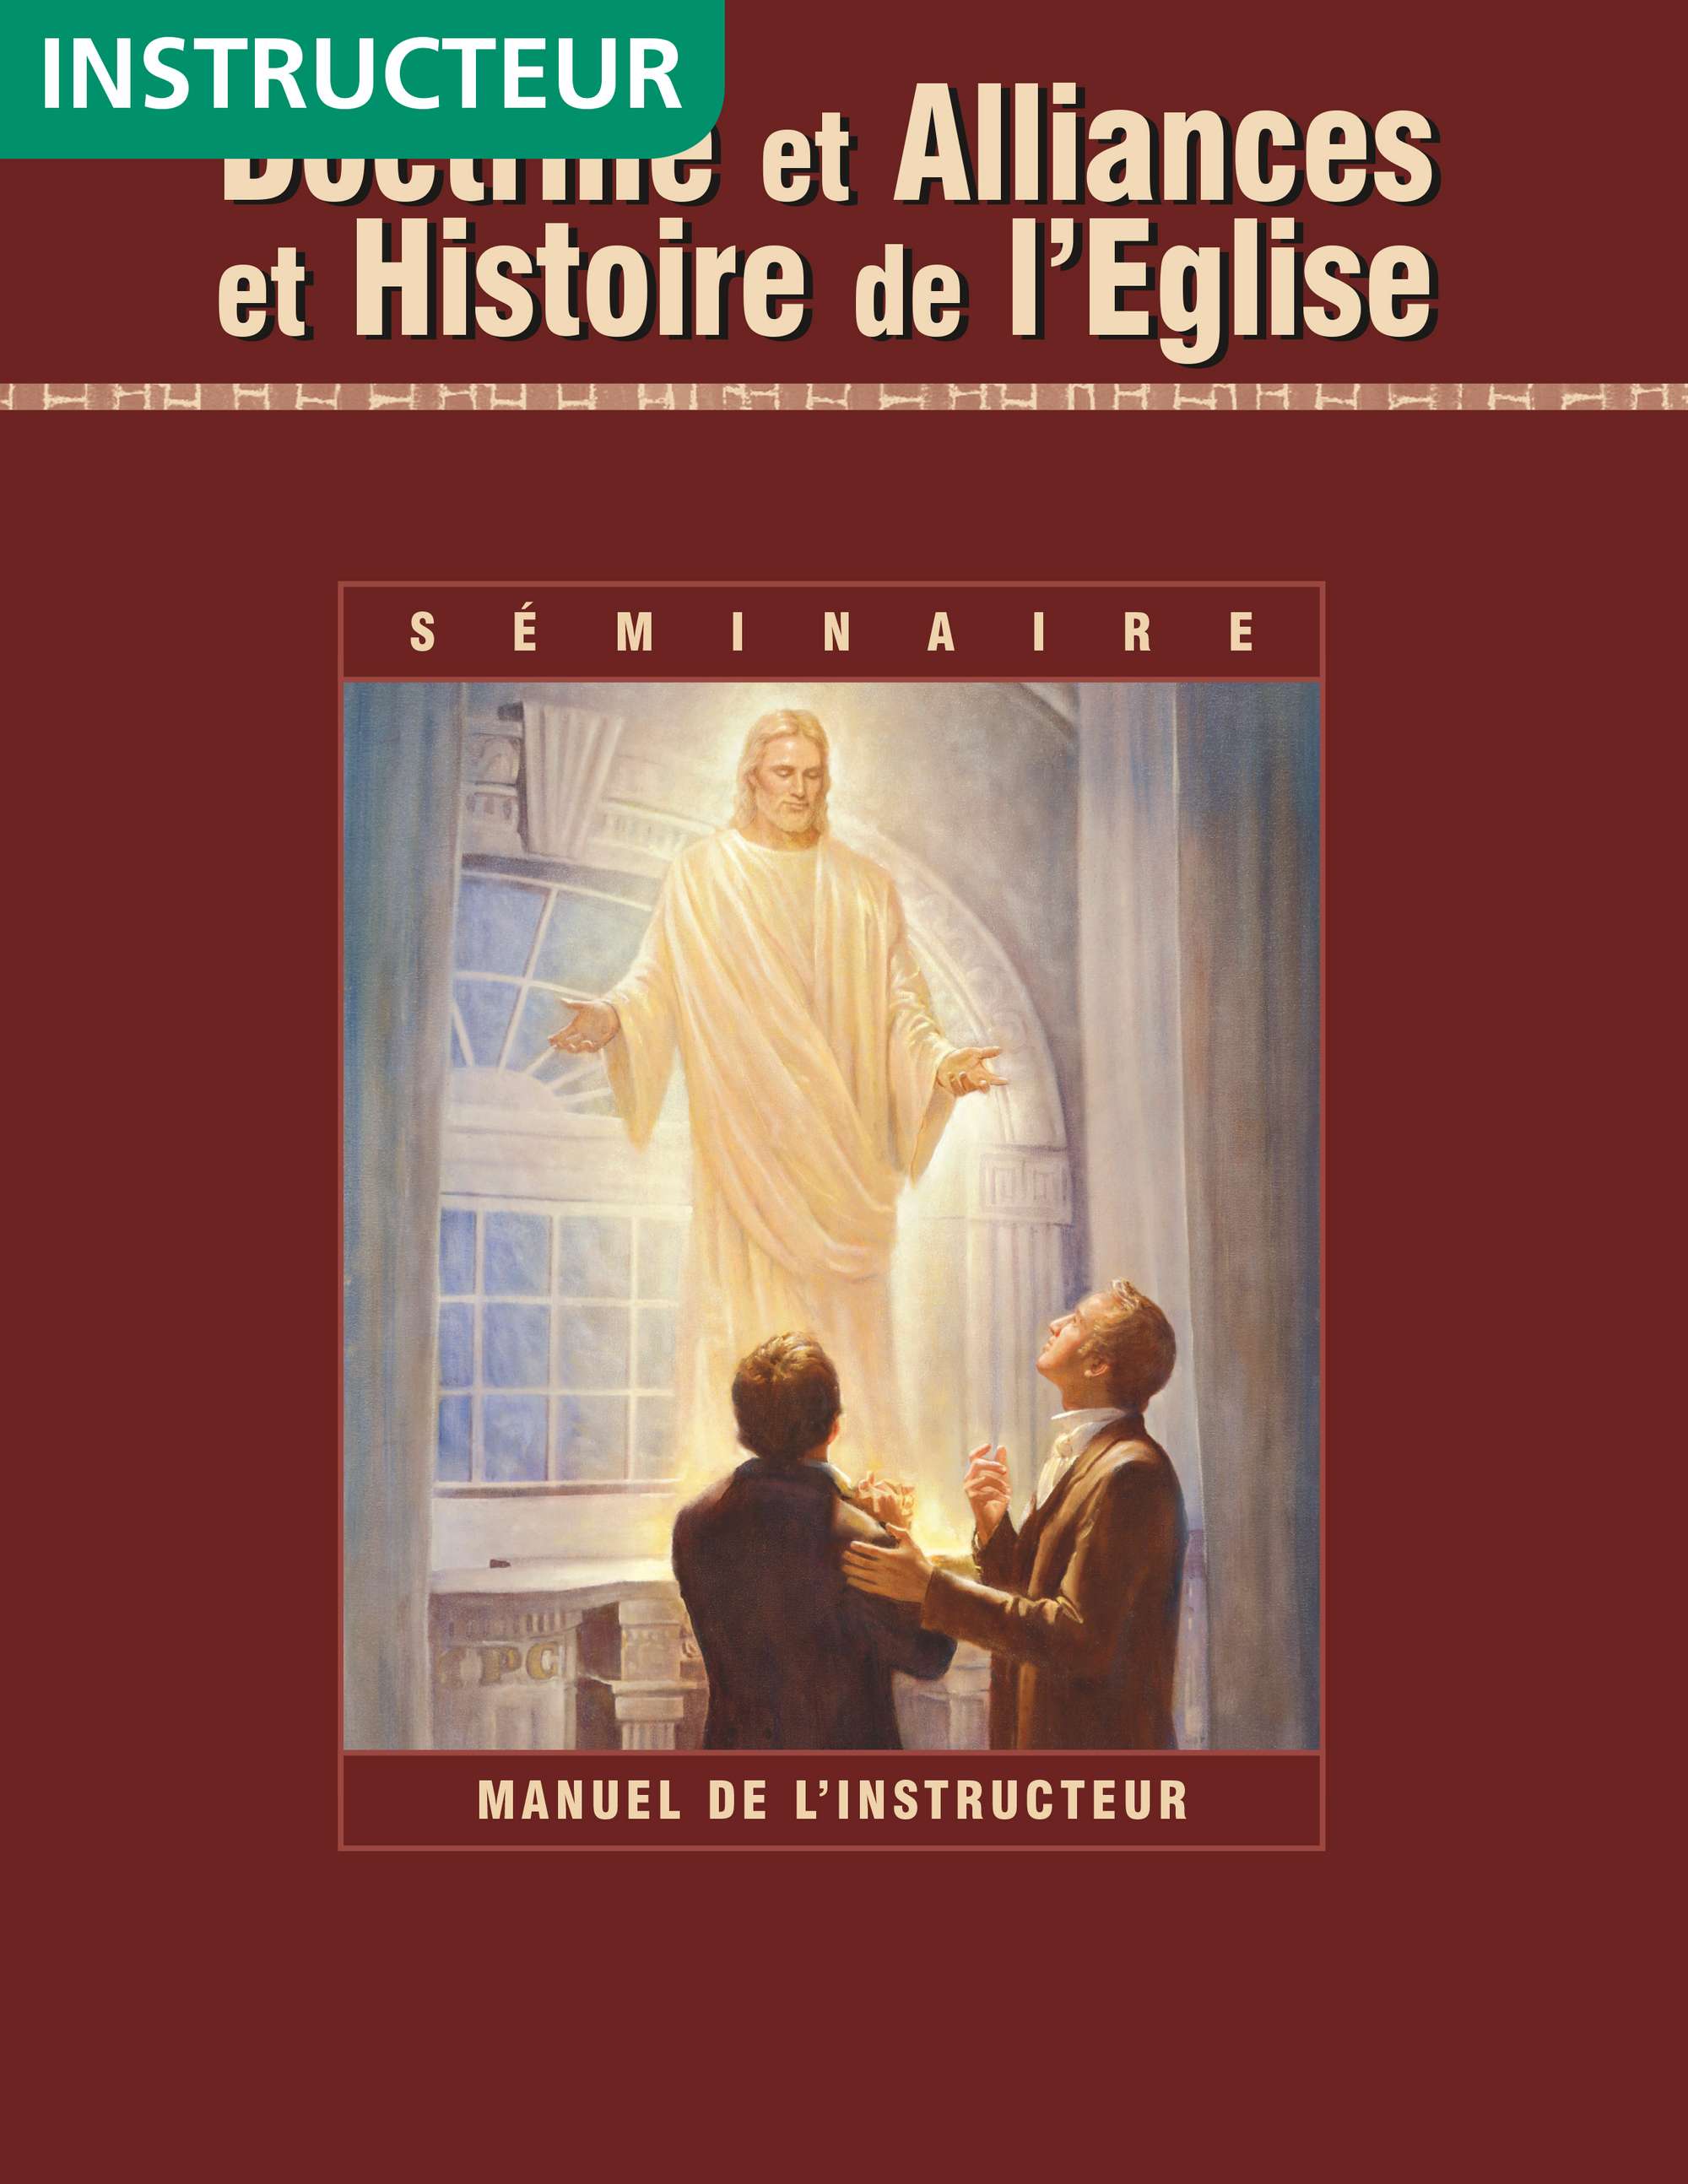 Doctrine et Alliances et histoire de l’Église, manuel de l’instructeur de séminaire